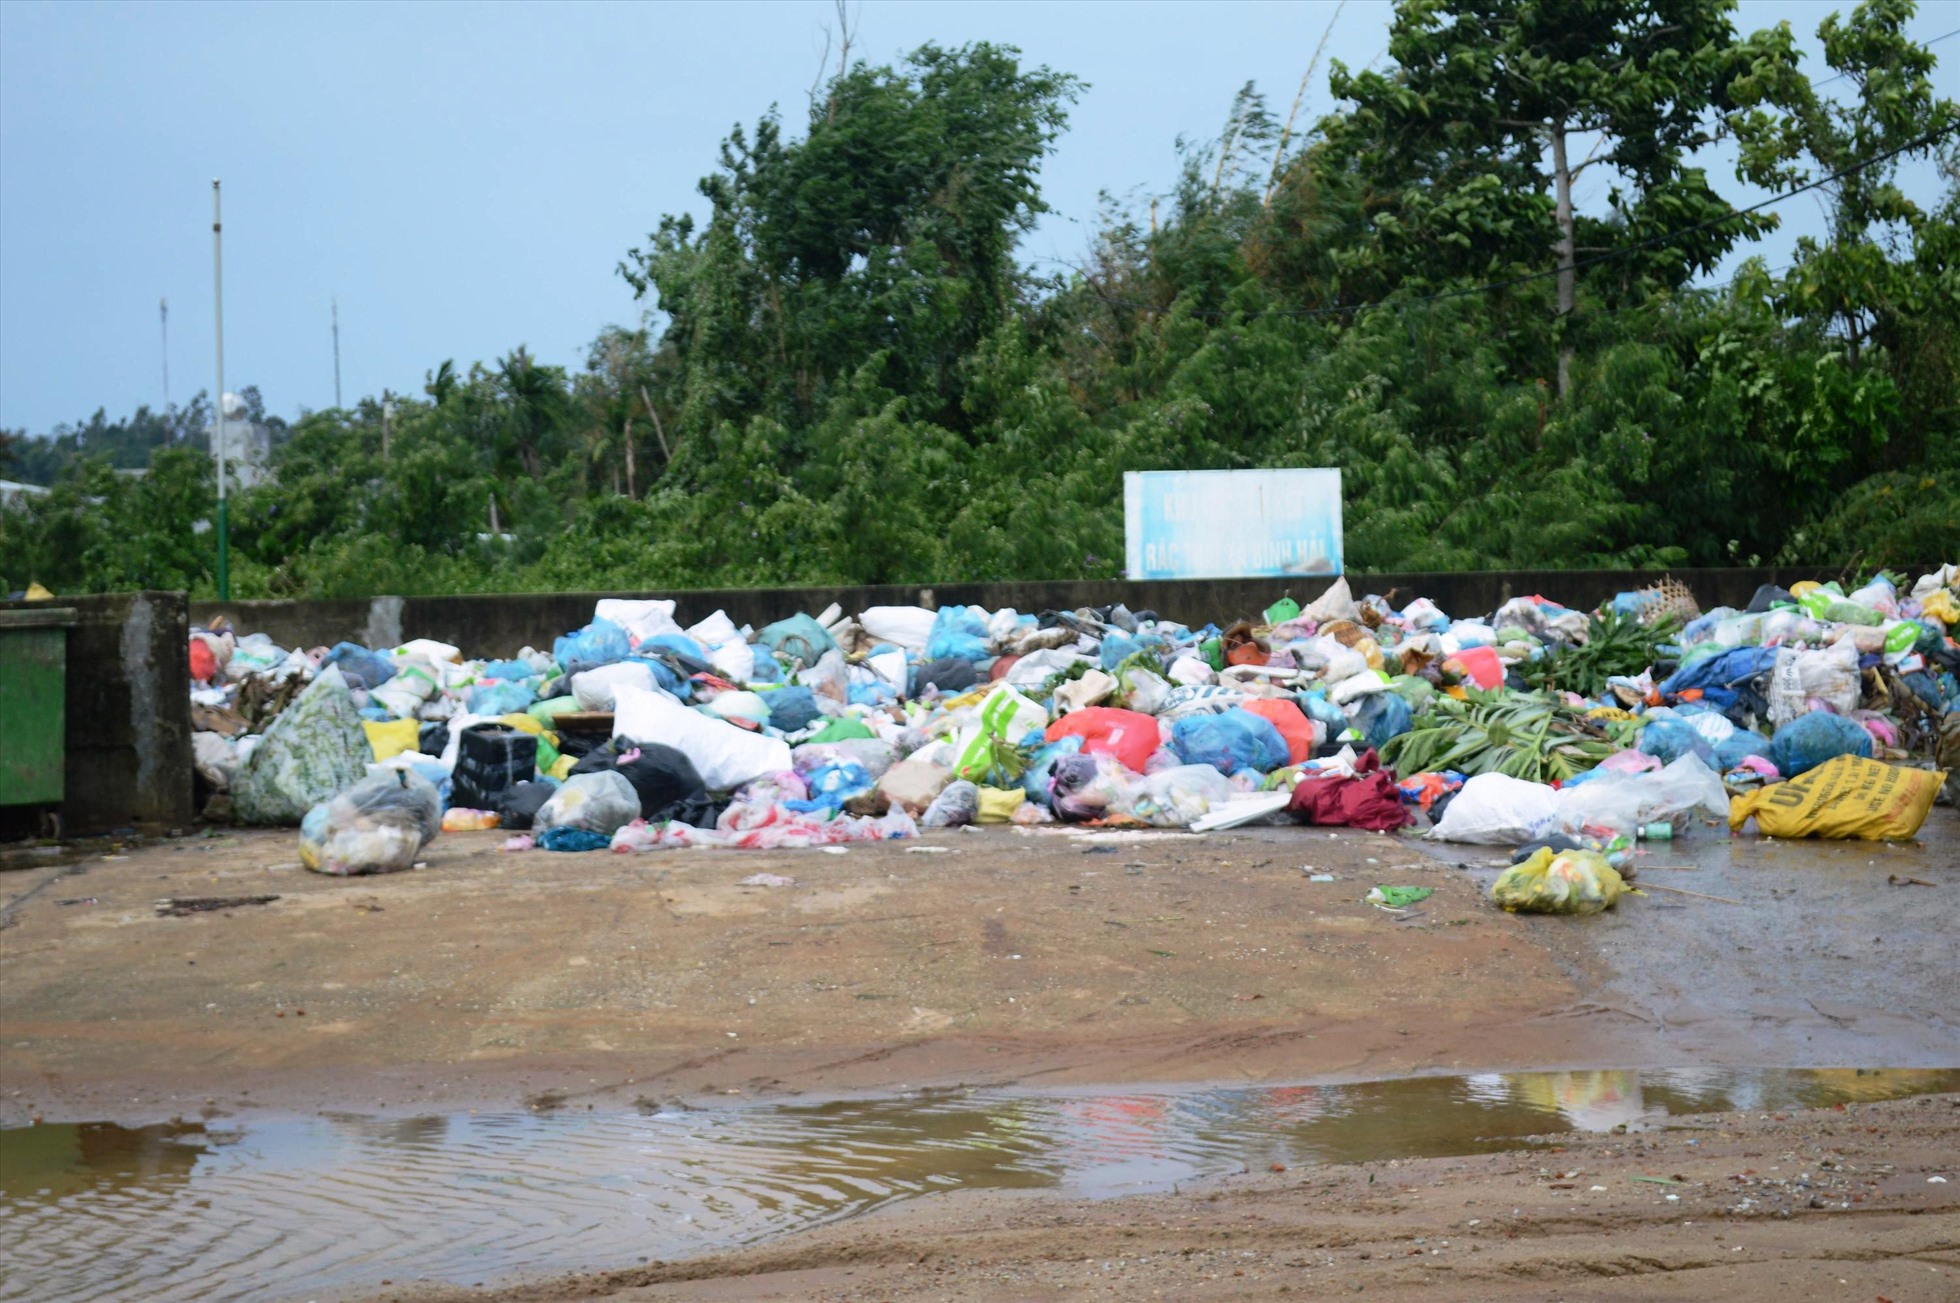 Nhiều năm nay, điểm tập kết rác ở thôn Thanh Thủy, xã Bình Hải là “điểm đen” về ô nhiễm môi trường. Ảnh: Ngọc Viên